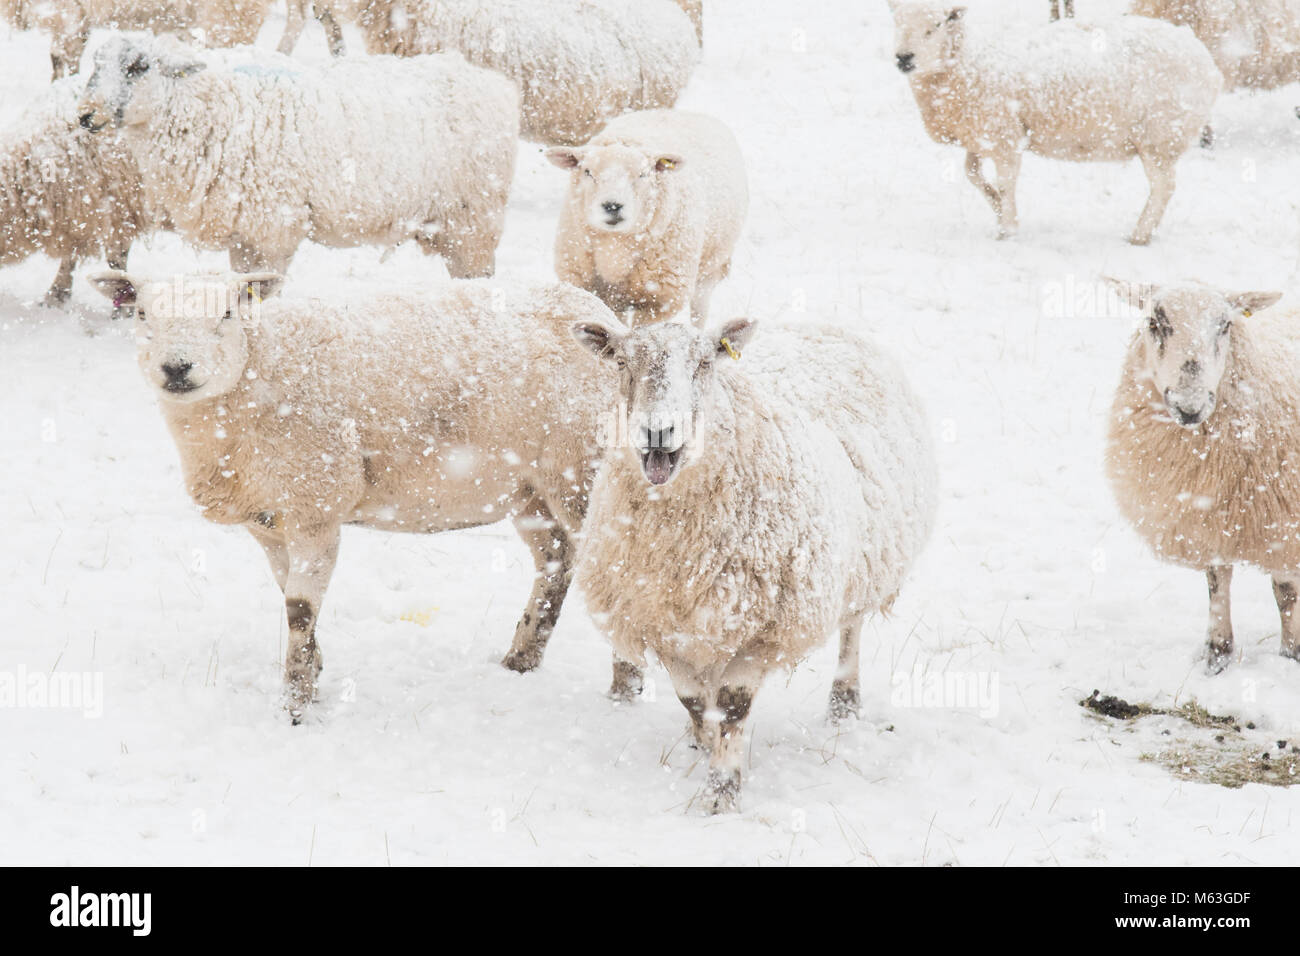 Balfron, Stirlingshire, Scotland, UK. 28 Février, 2018. UK - les moutons dans l'espoir de nourriture dans la neige lourde, in Hartley, Stirlingshire Crédit : Kay Roxby/Alamy Live News Banque D'Images